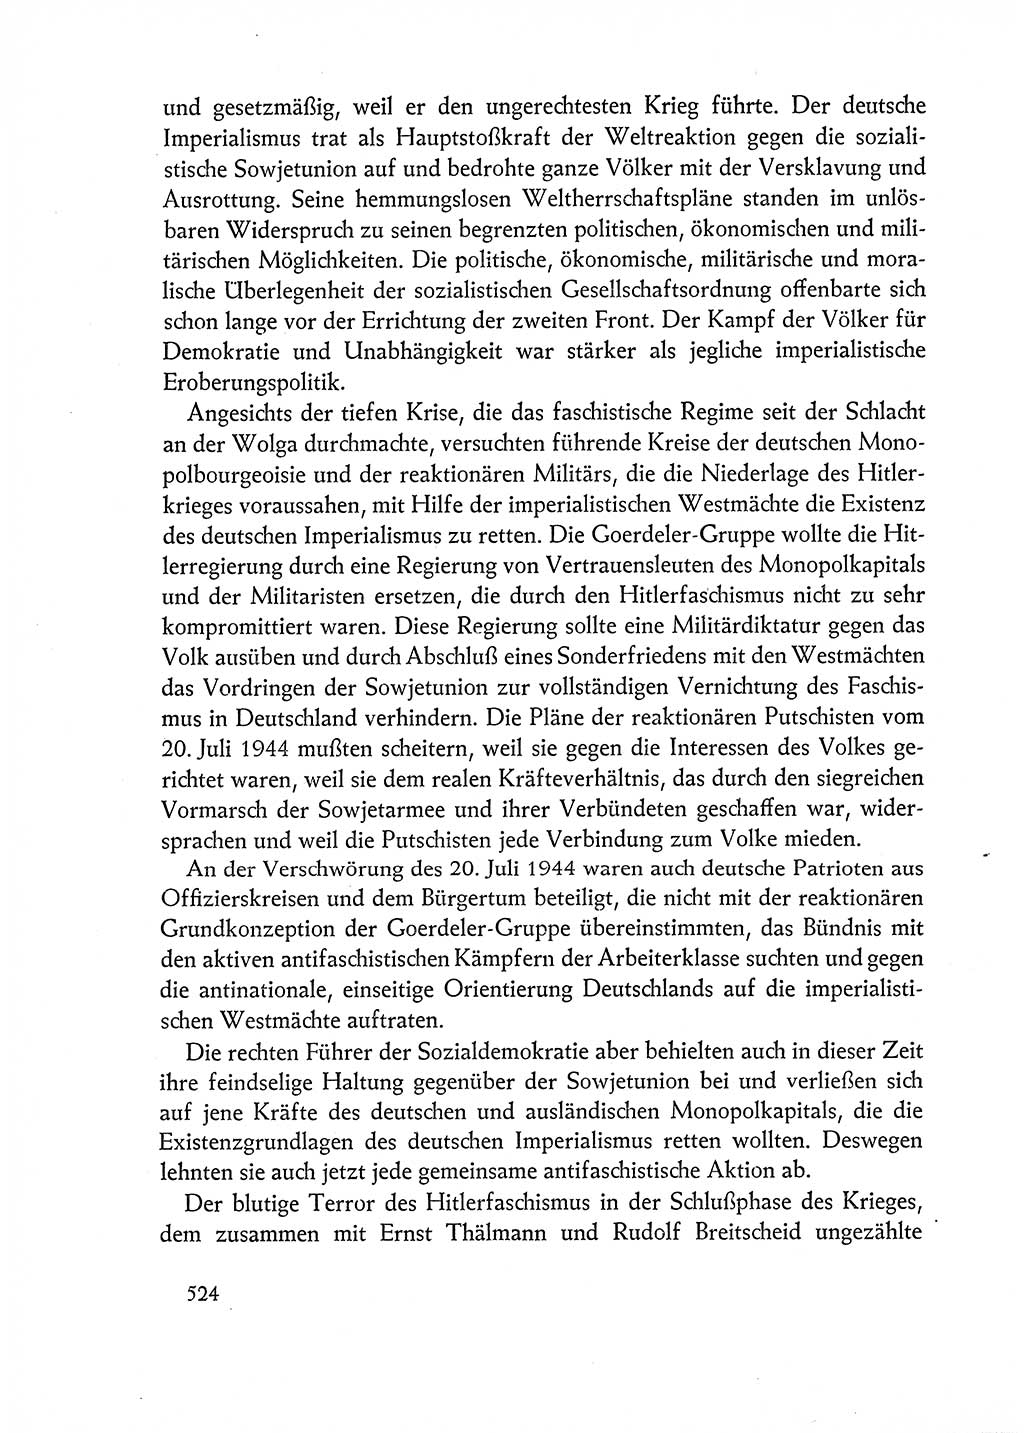 Dokumente der Sozialistischen Einheitspartei Deutschlands (SED) [Deutsche Demokratische Republik (DDR)] 1962-1963, Seite 524 (Dok. SED DDR 1962-1963, S. 524)